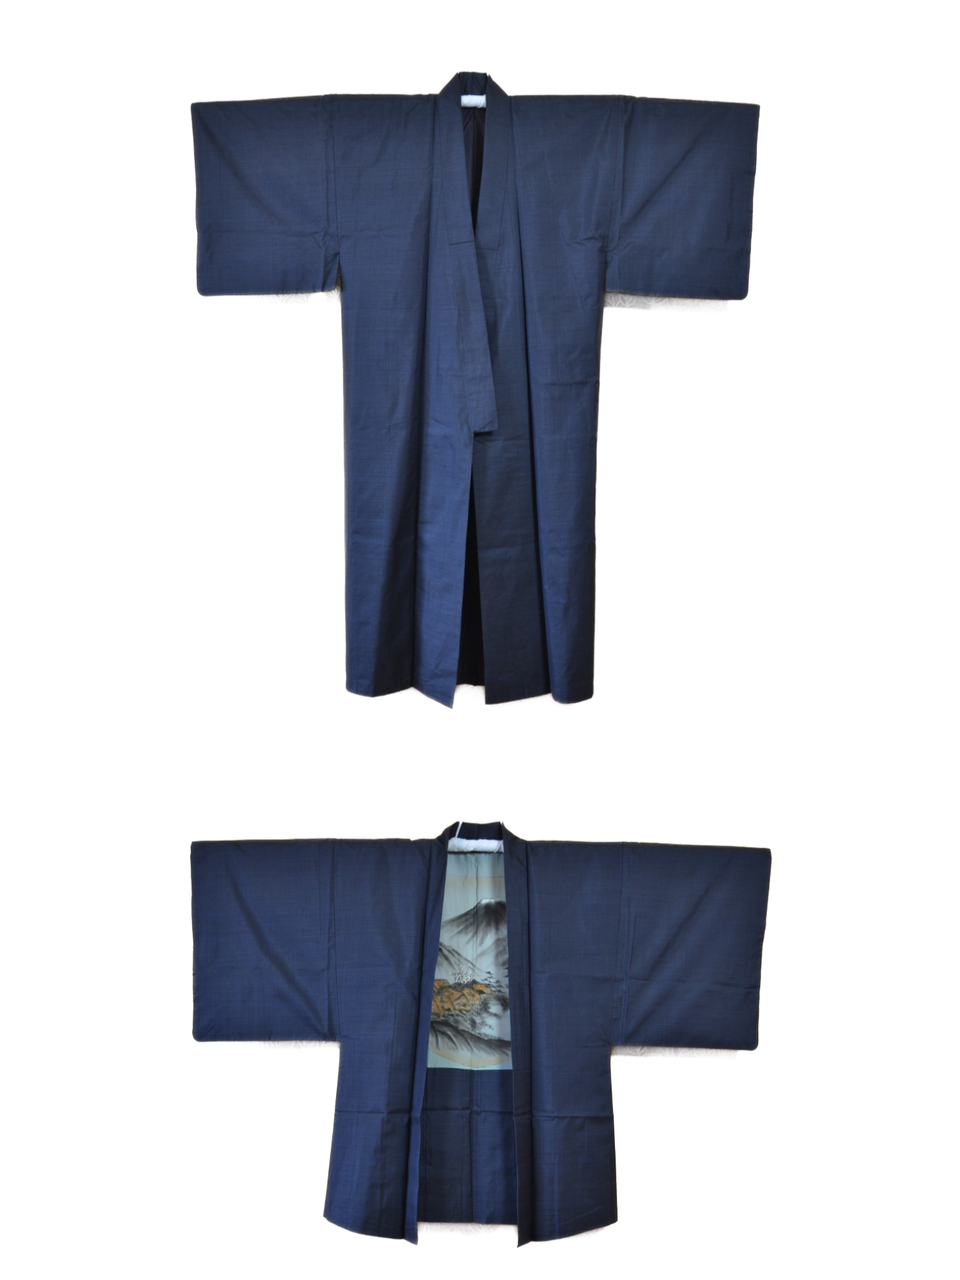 Miesten kimono ja haori setti, vintage silkkikimono